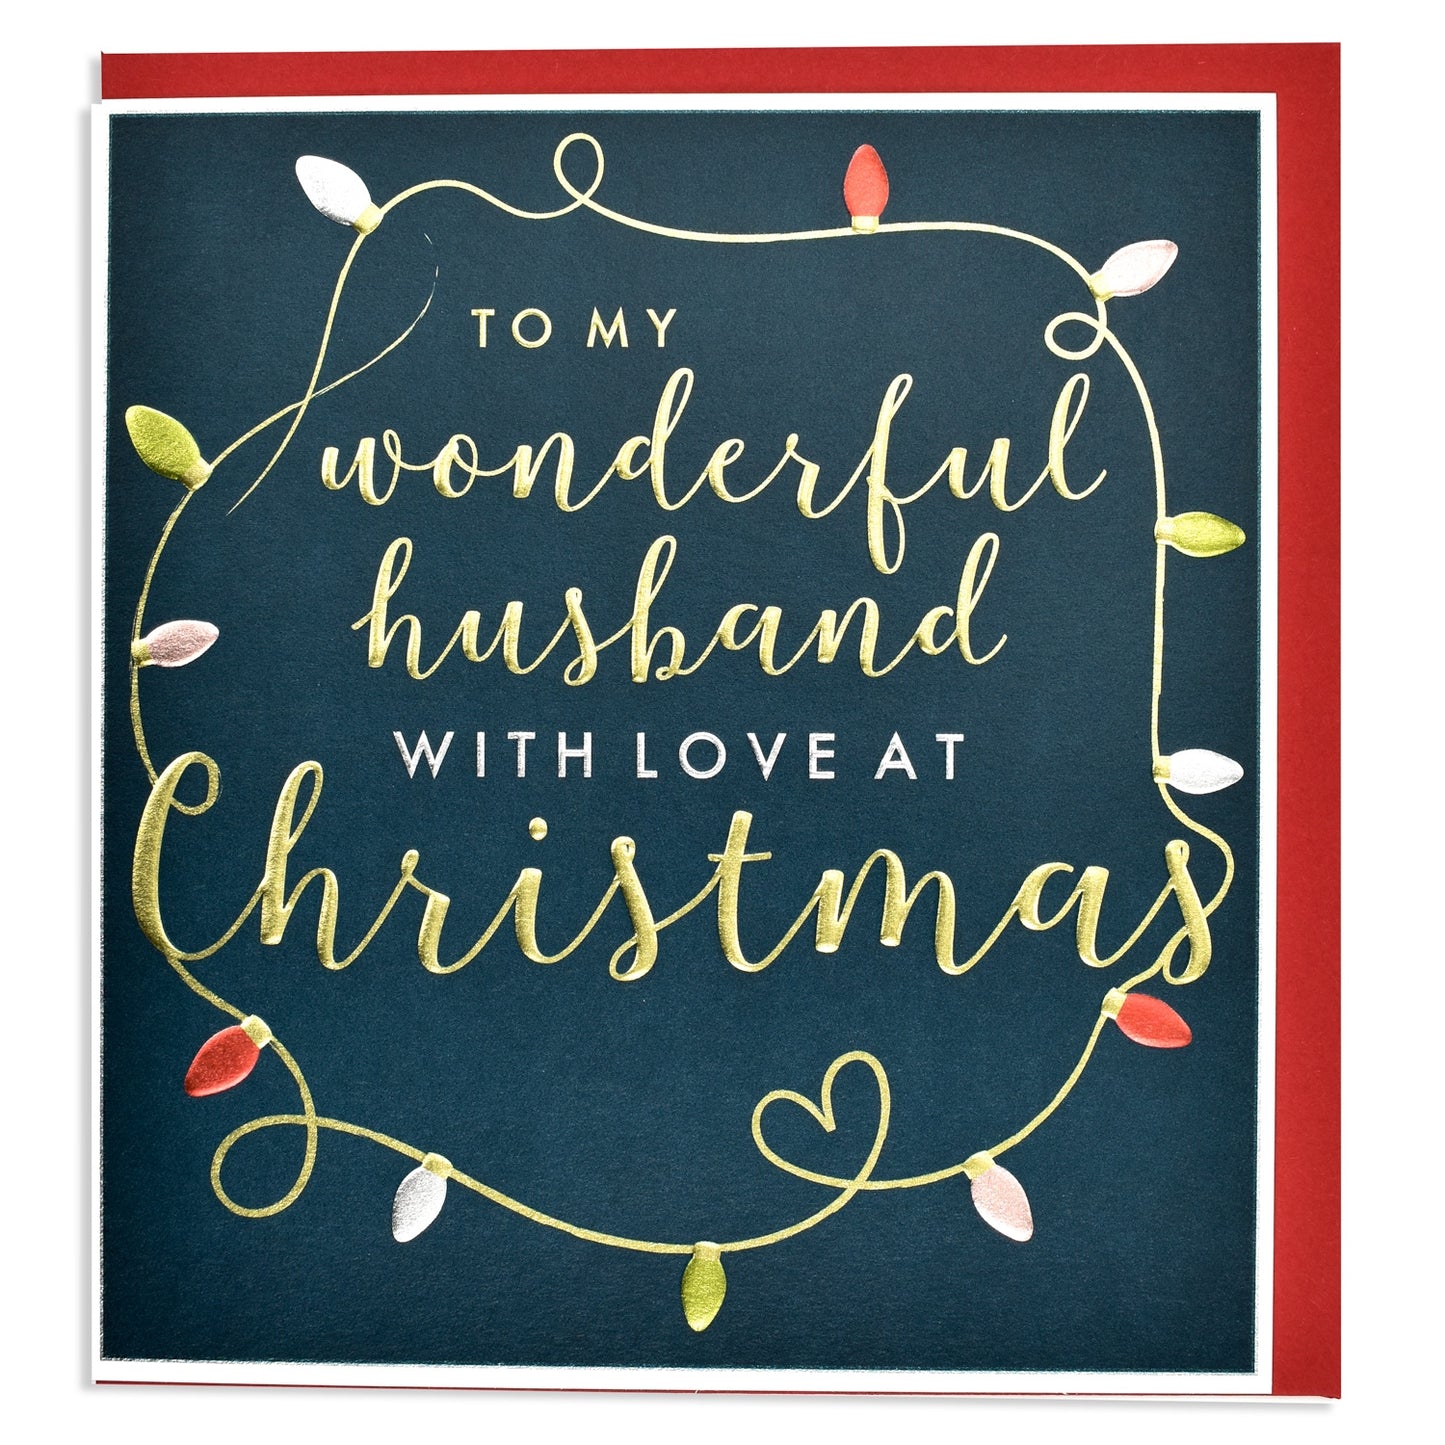 Husband - Christmas Card